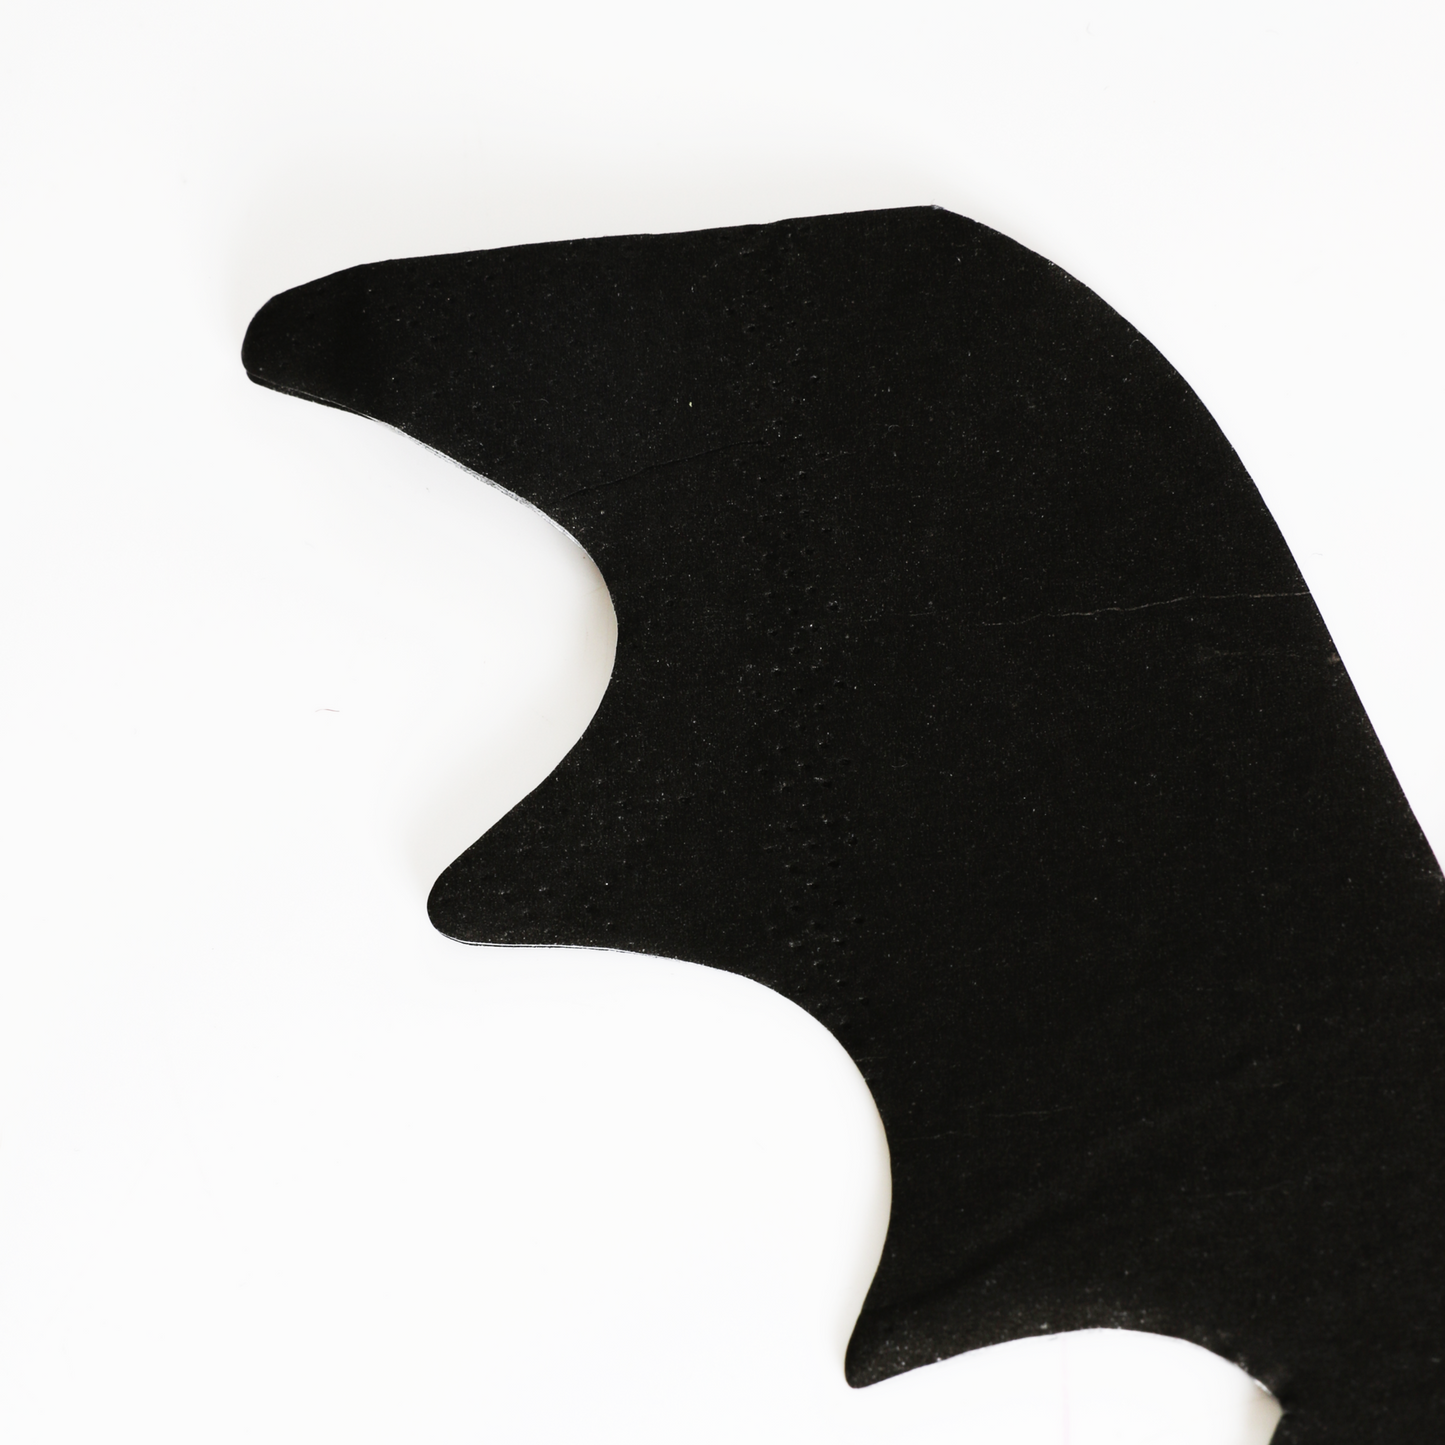 Black Bat Shaped Paper Napkins with Gold Foil Eyes Pack of 20